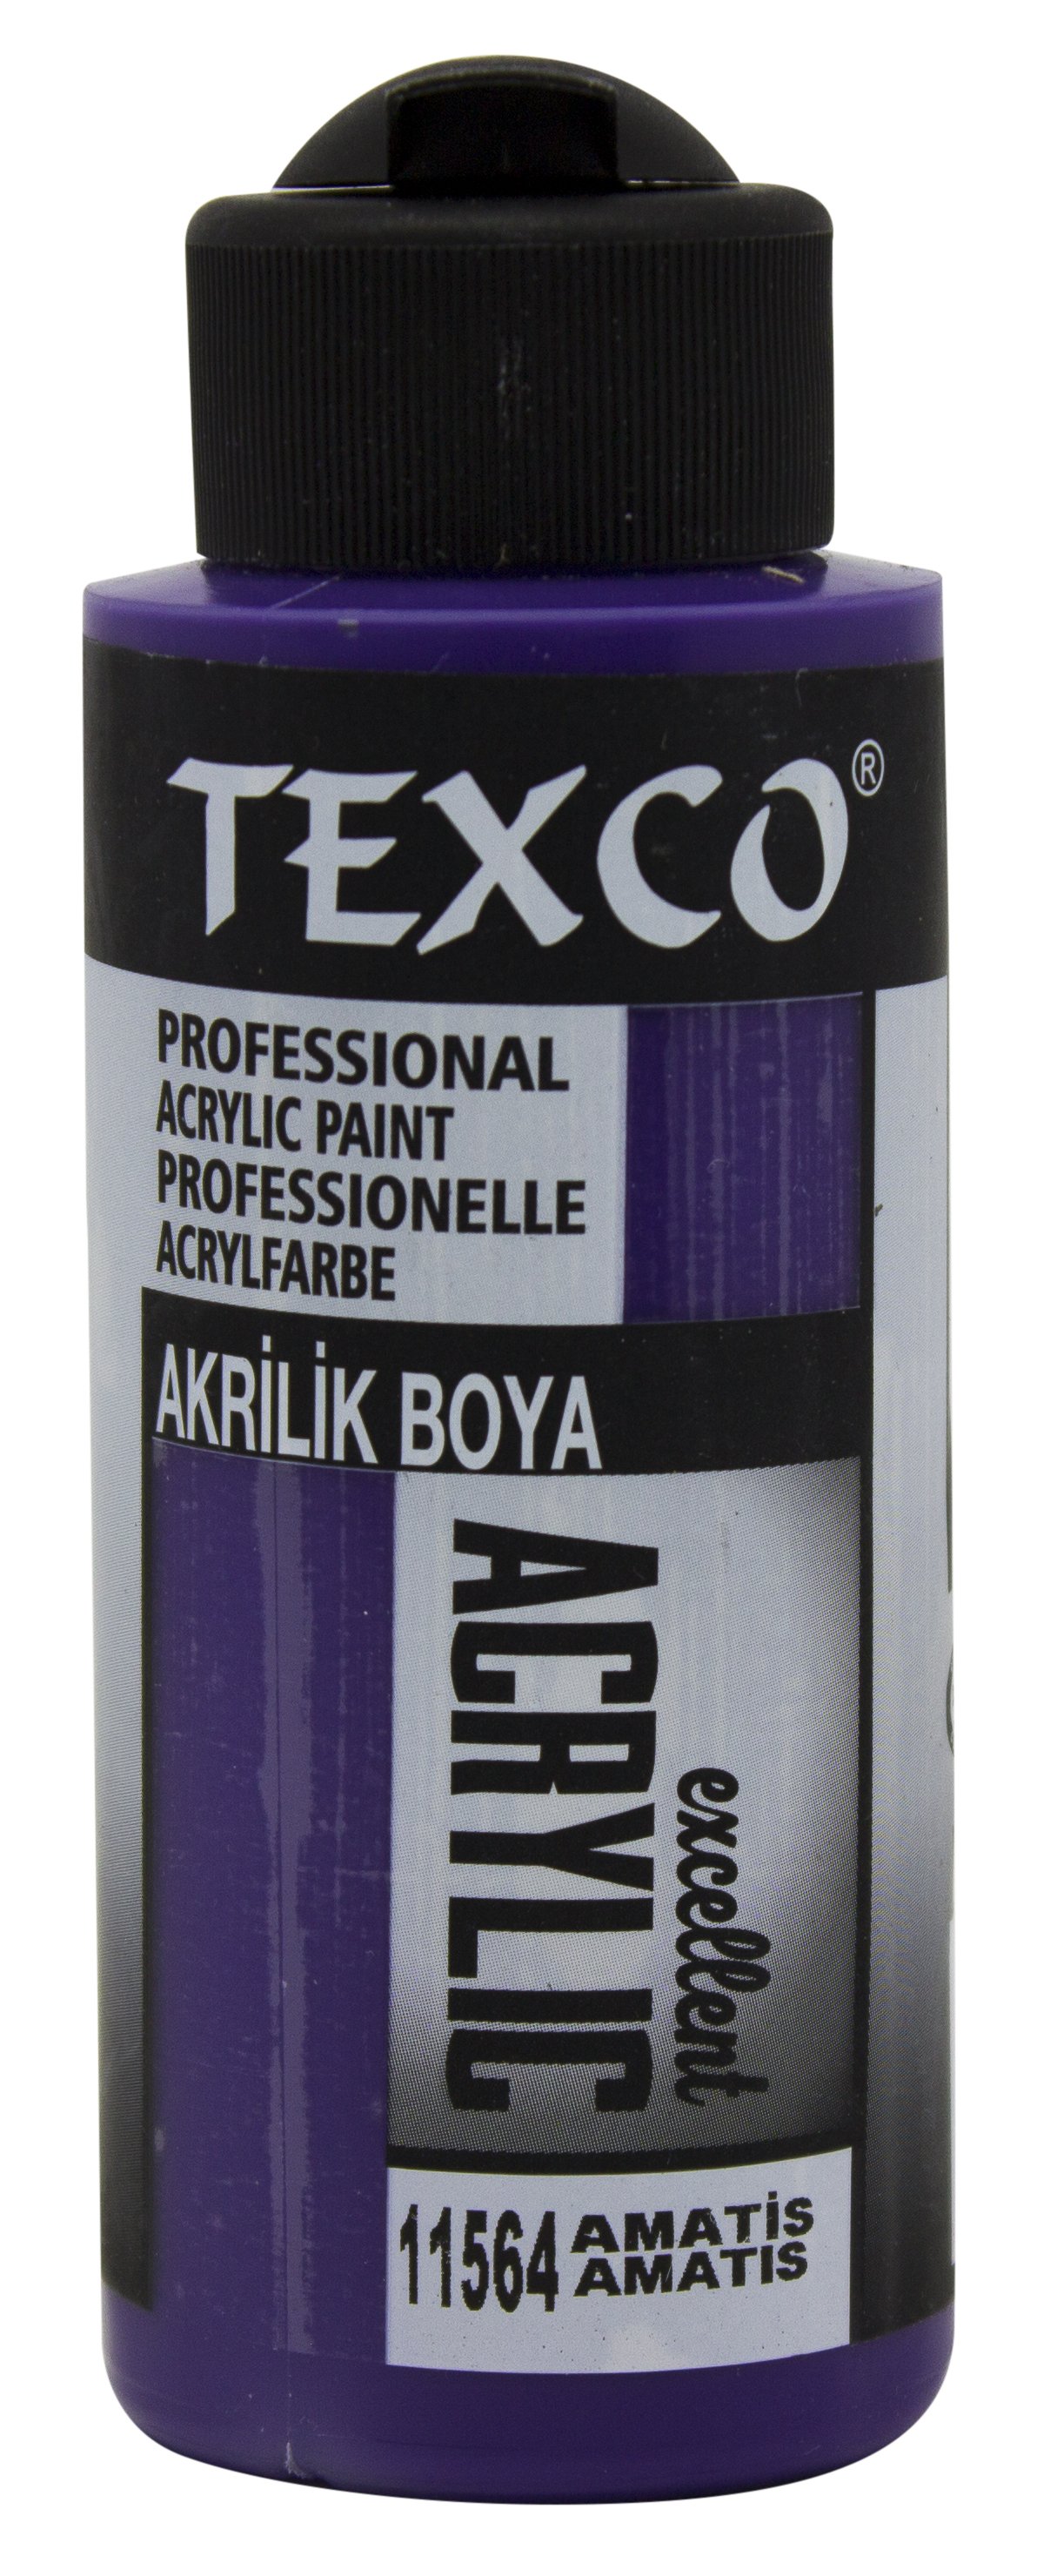 Texco Excellent Akrilik Boya 11564-Amatis 110 cc